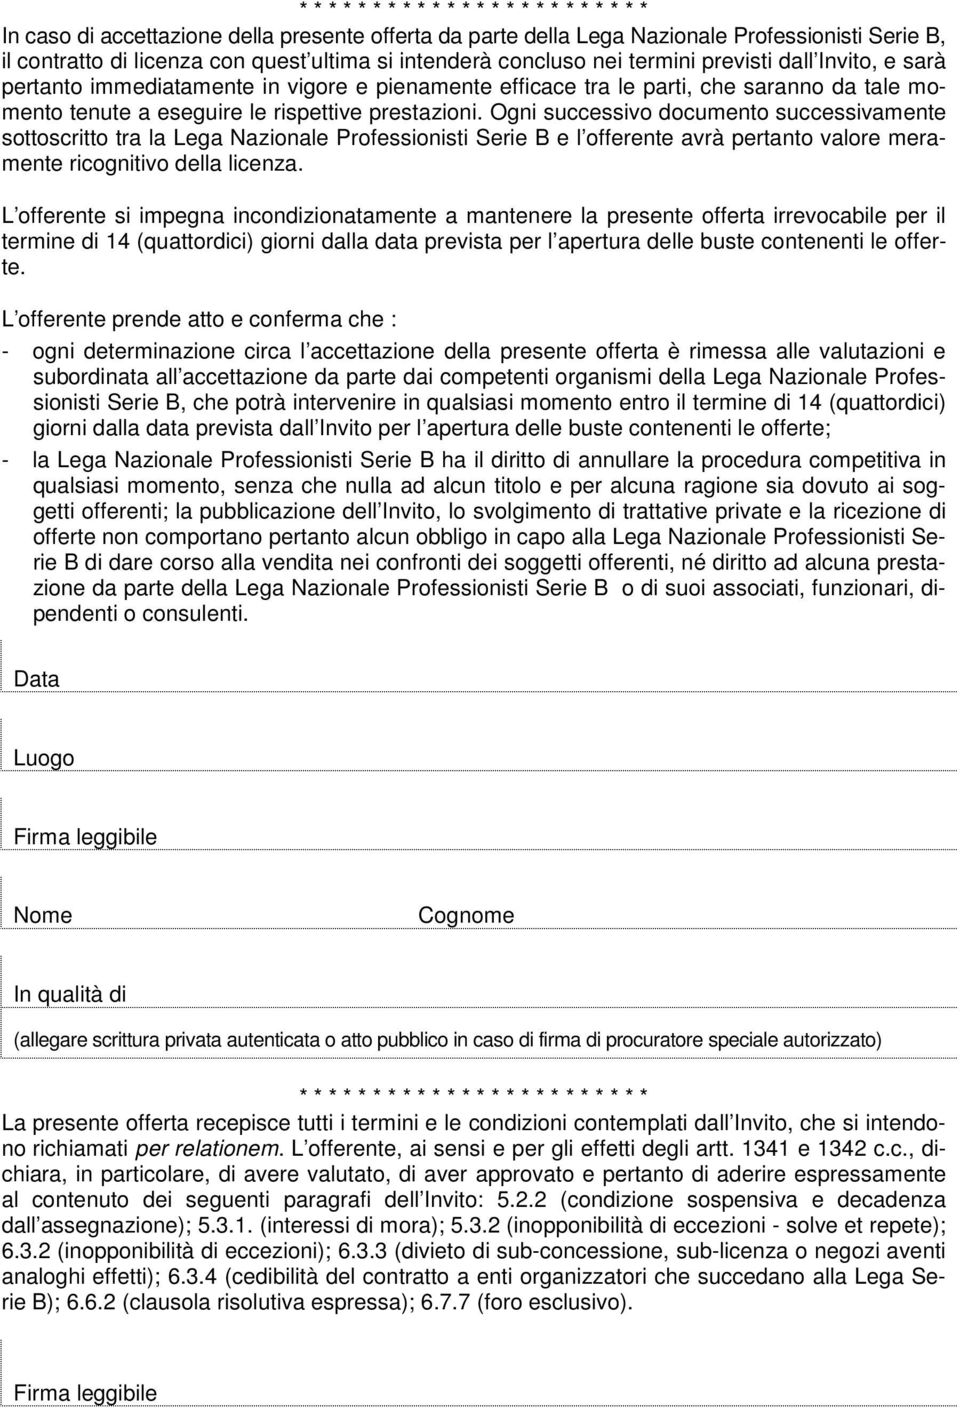 prestazioni. Ogni successivo documento successivamente sottoscritto tra la Lega Nazionale Professionisti Serie B e l offerente avrà pertanto valore meramente ricognitivo della licenza.